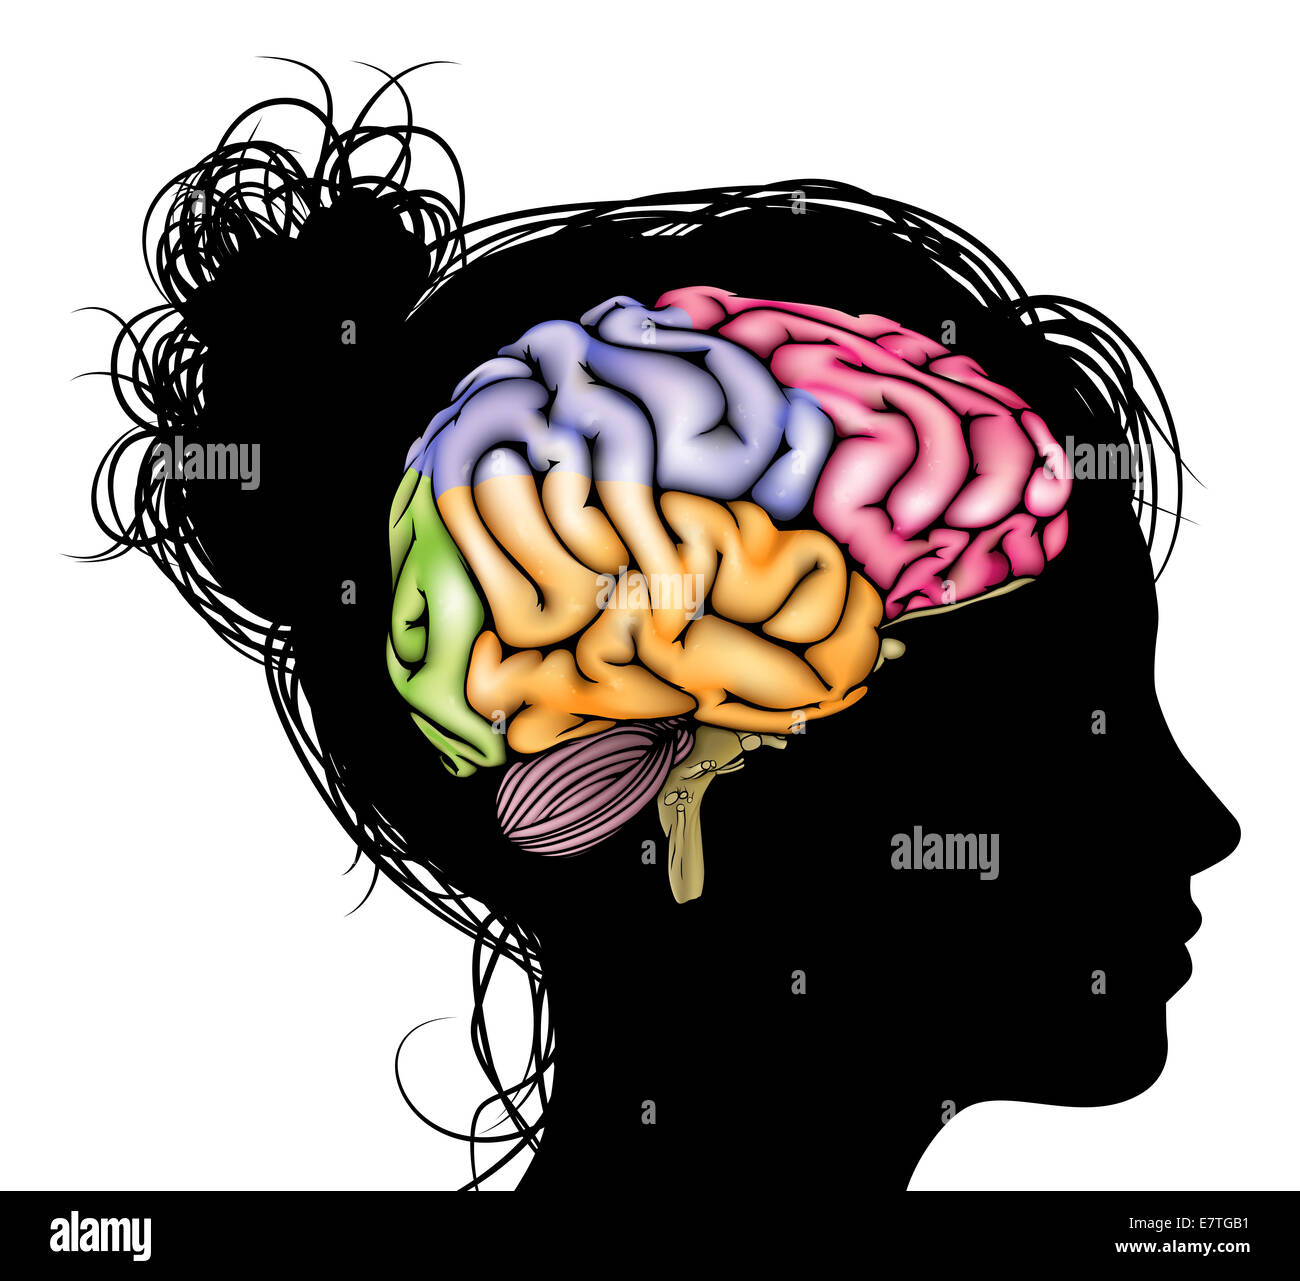 Une tête de femme en silhouette avec un cerveau sectionné. Pour Concept mental, psychologique, le développement du cerveau, l'apprentissage et l'éducation Banque D'Images